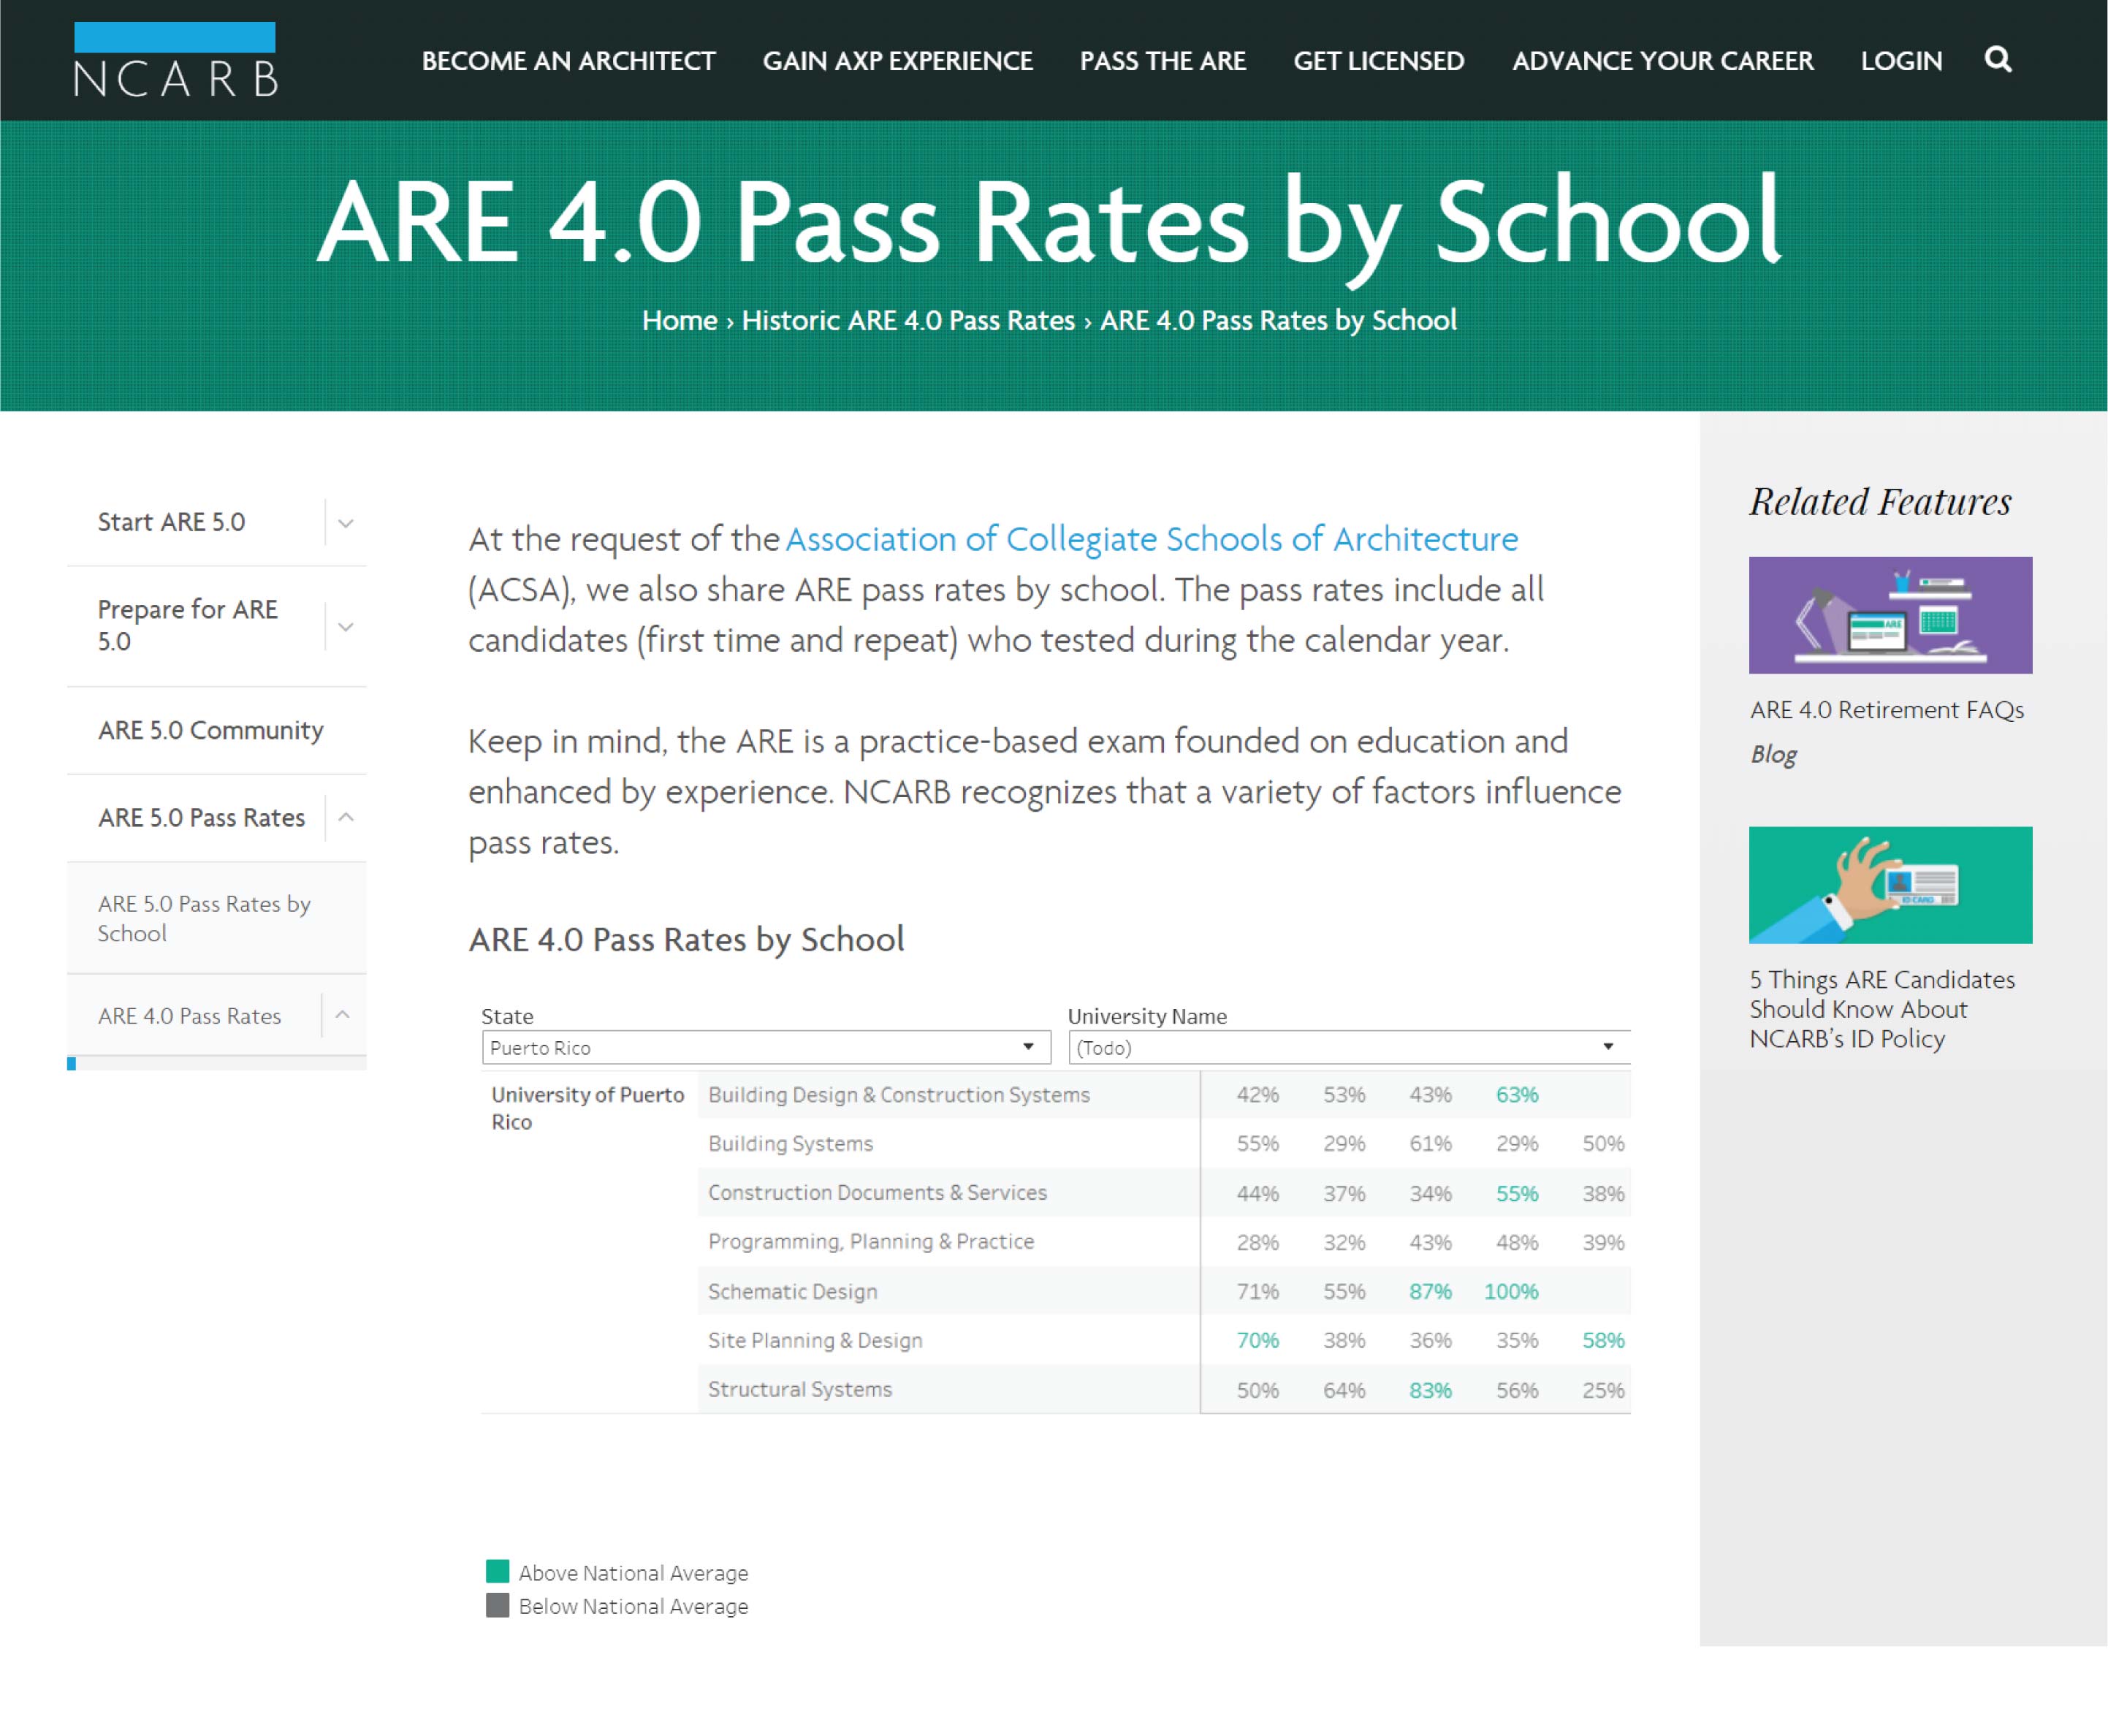 Imagen sobre ARE 4.0 Pass Rates by School de nuestra Escuela UPR